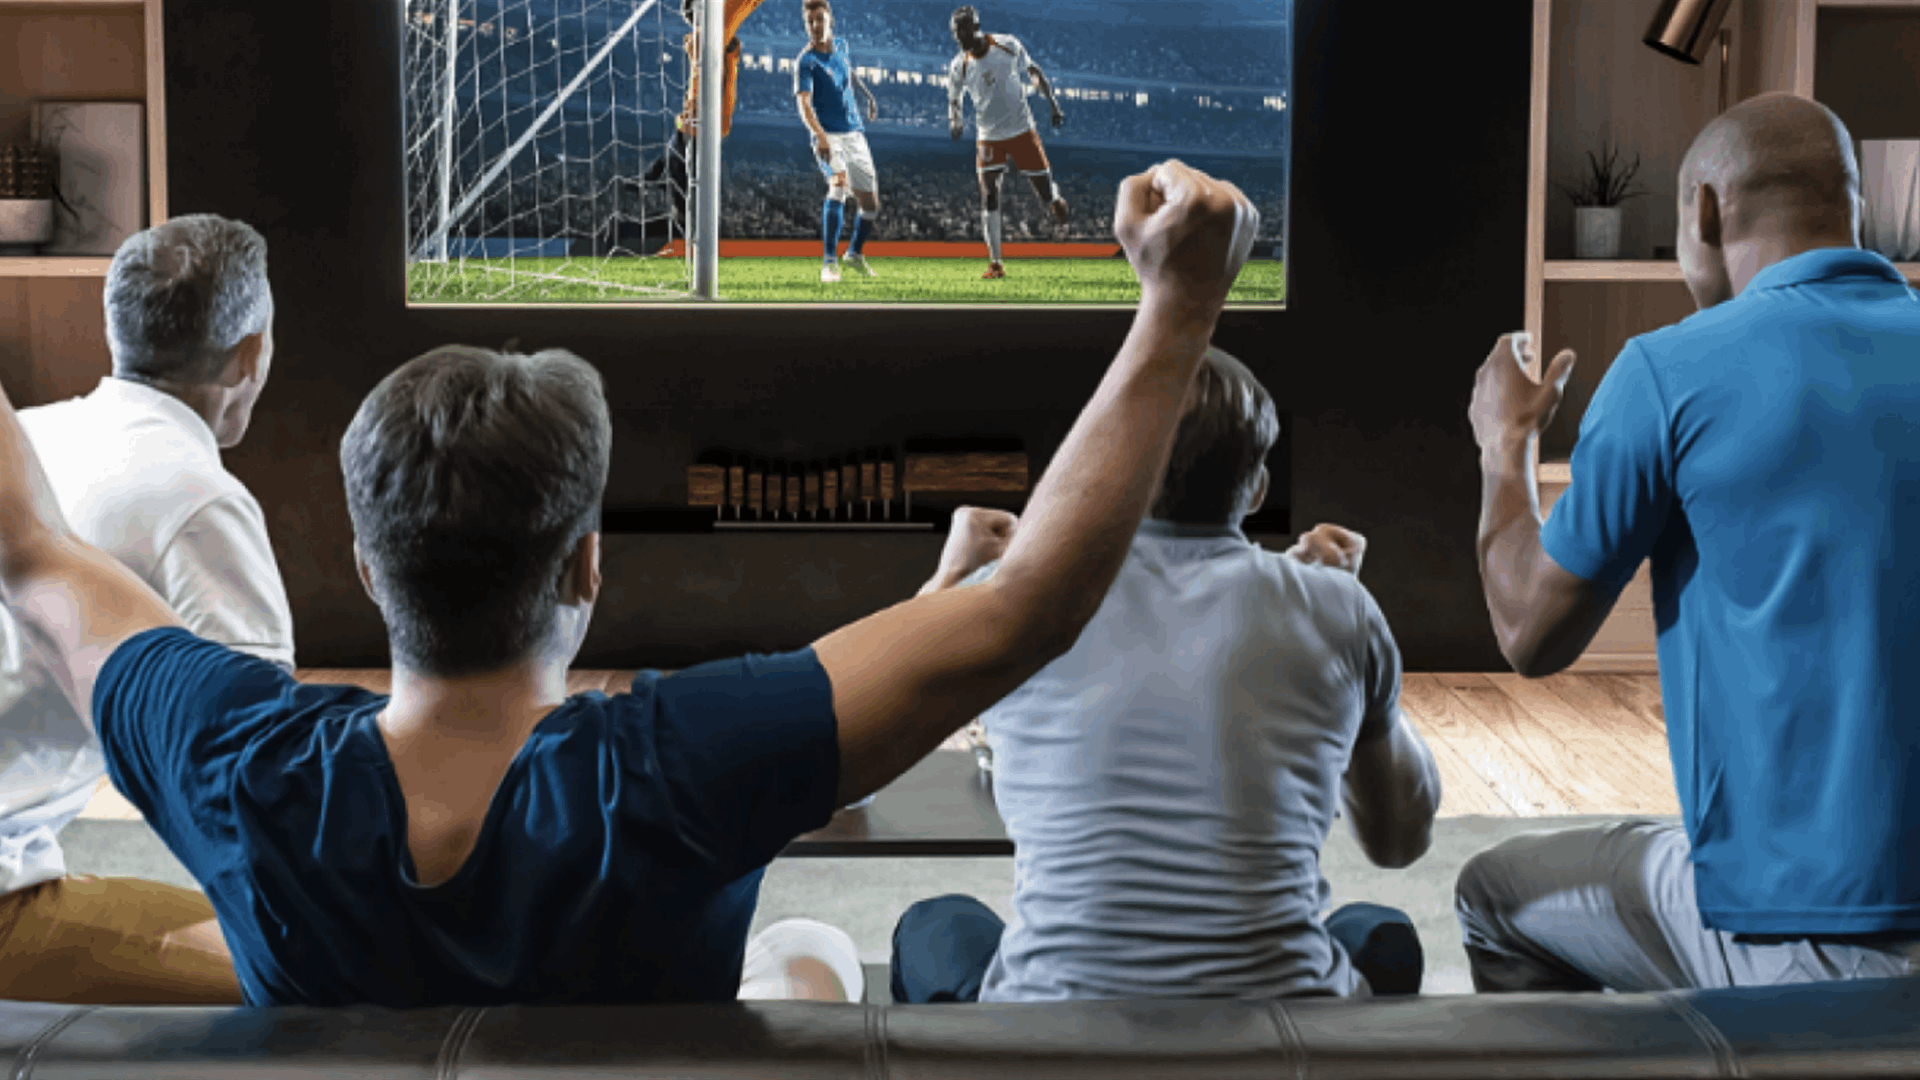 هل تجعل مشاهدة الرياضة الإنسان أكثر سعادة؟